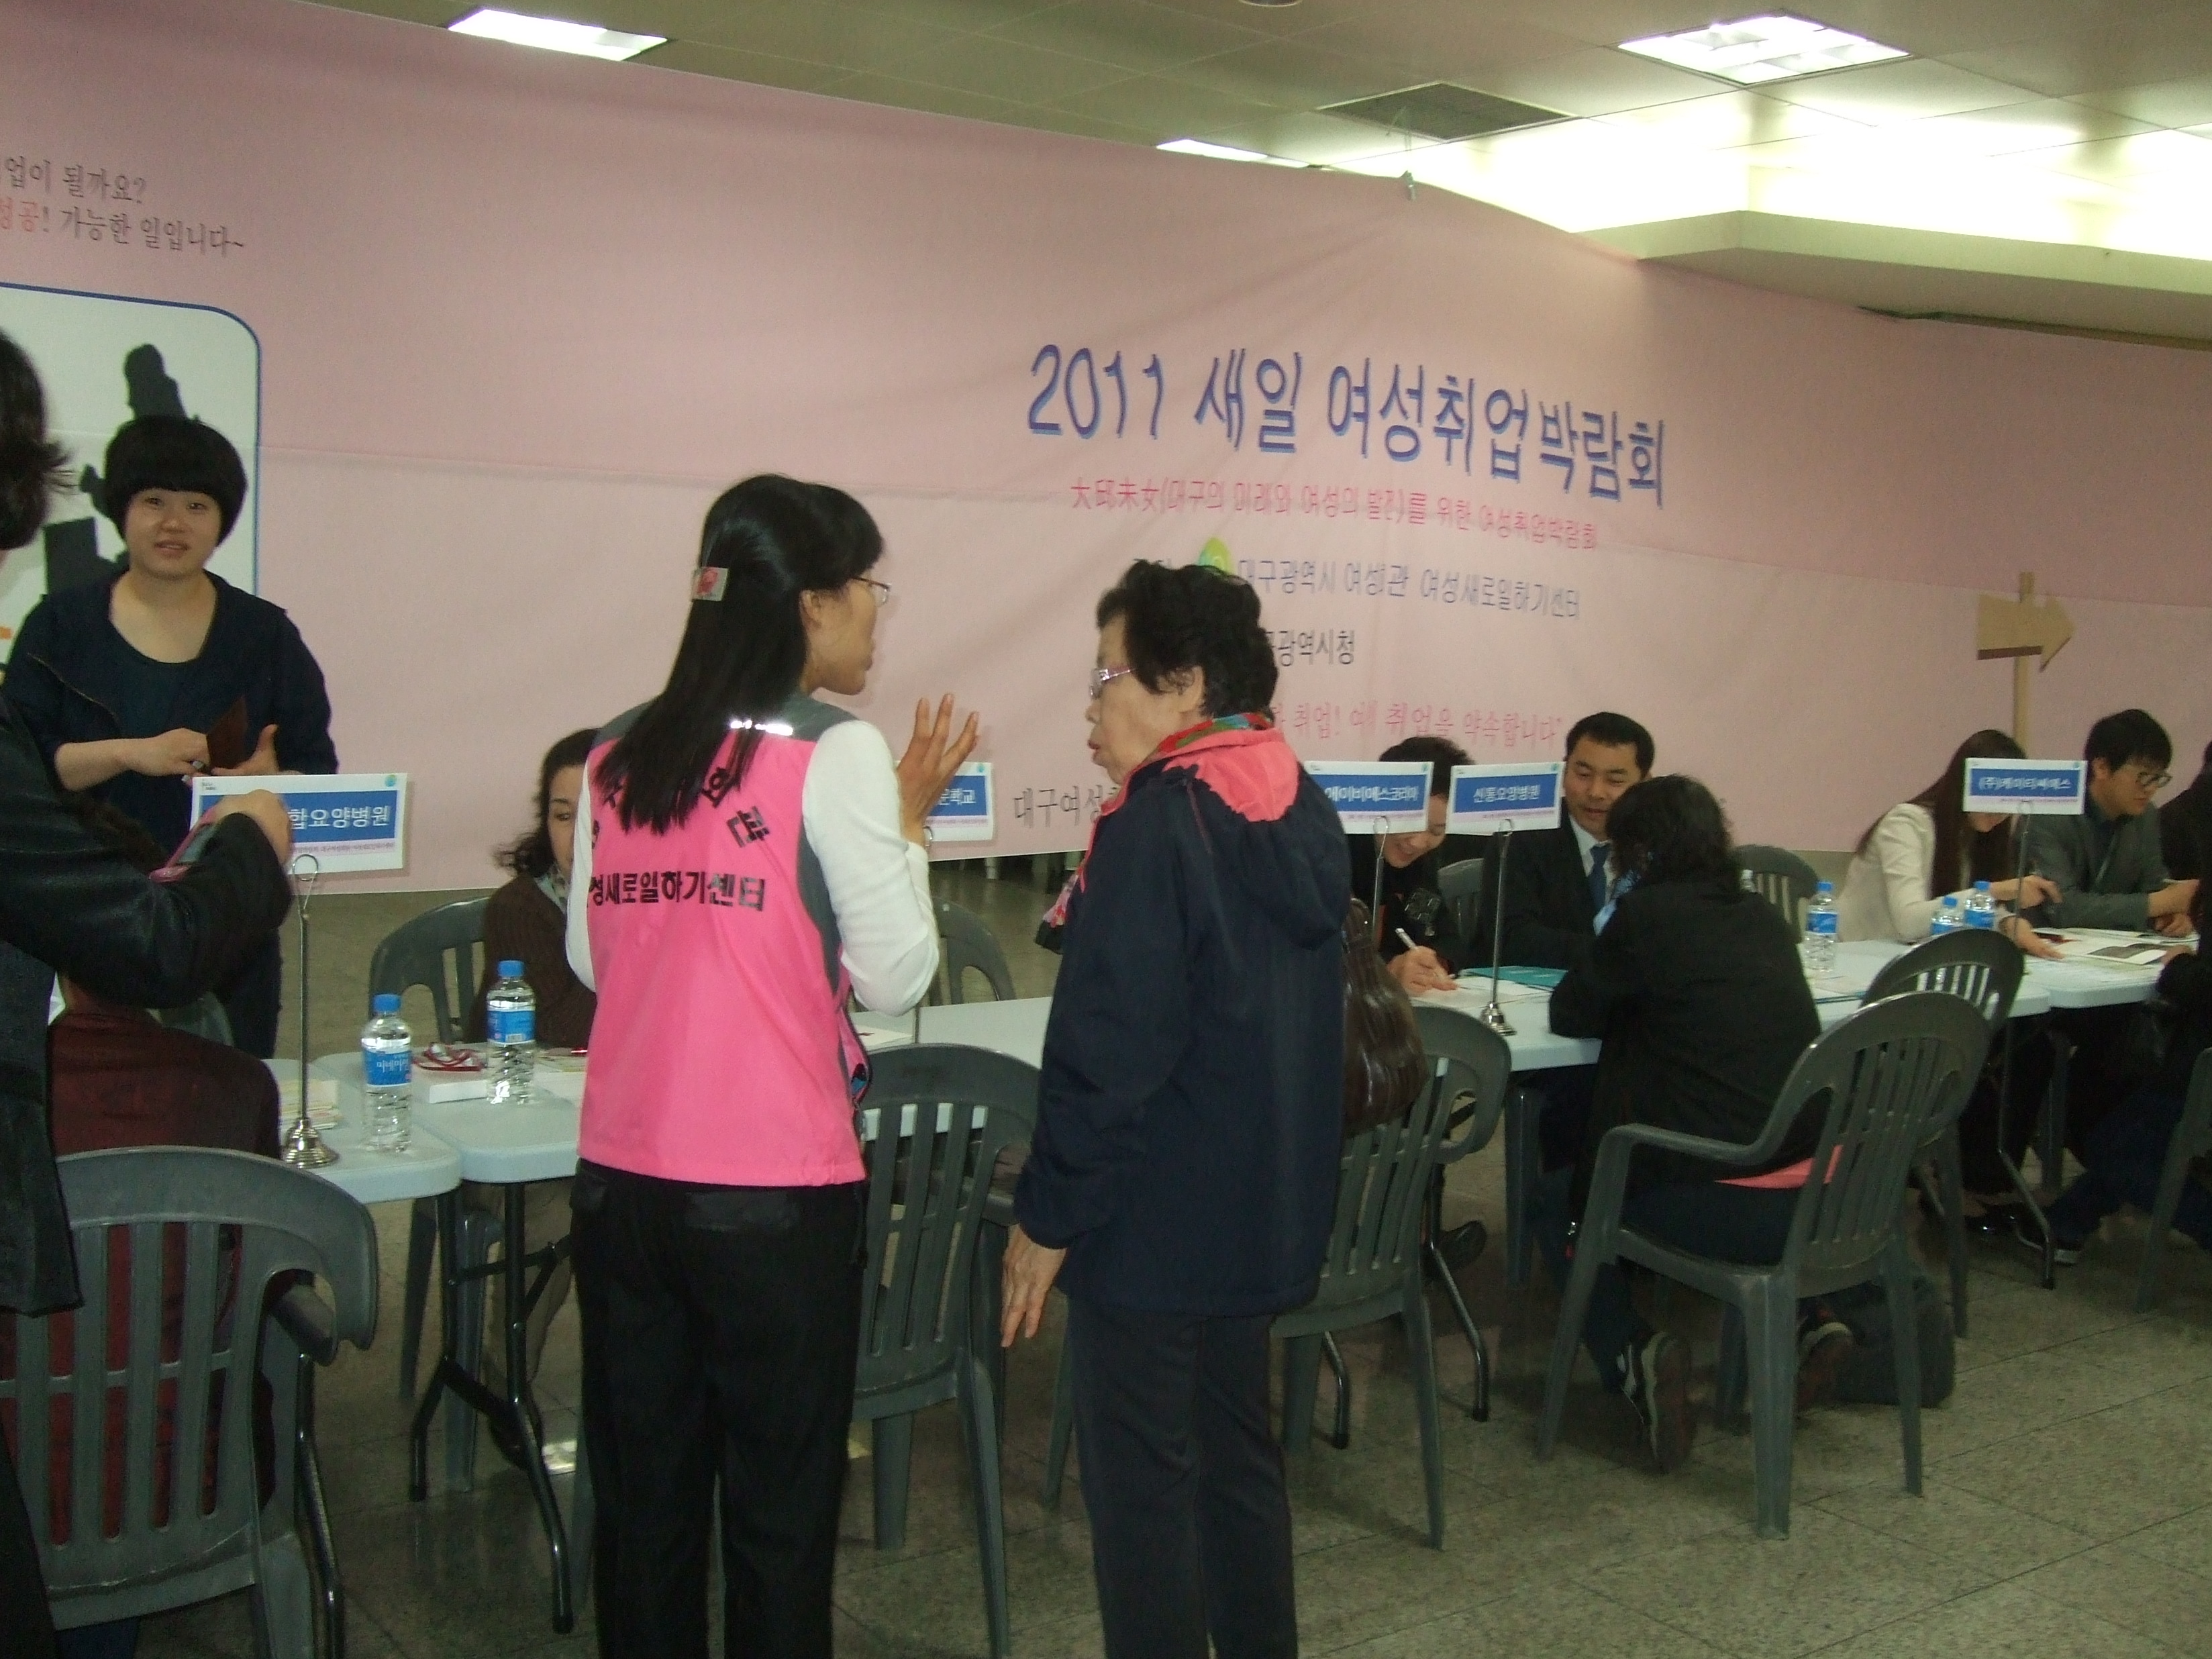 2011 새일여성취업박람회-두류지하상가(11.4.27)